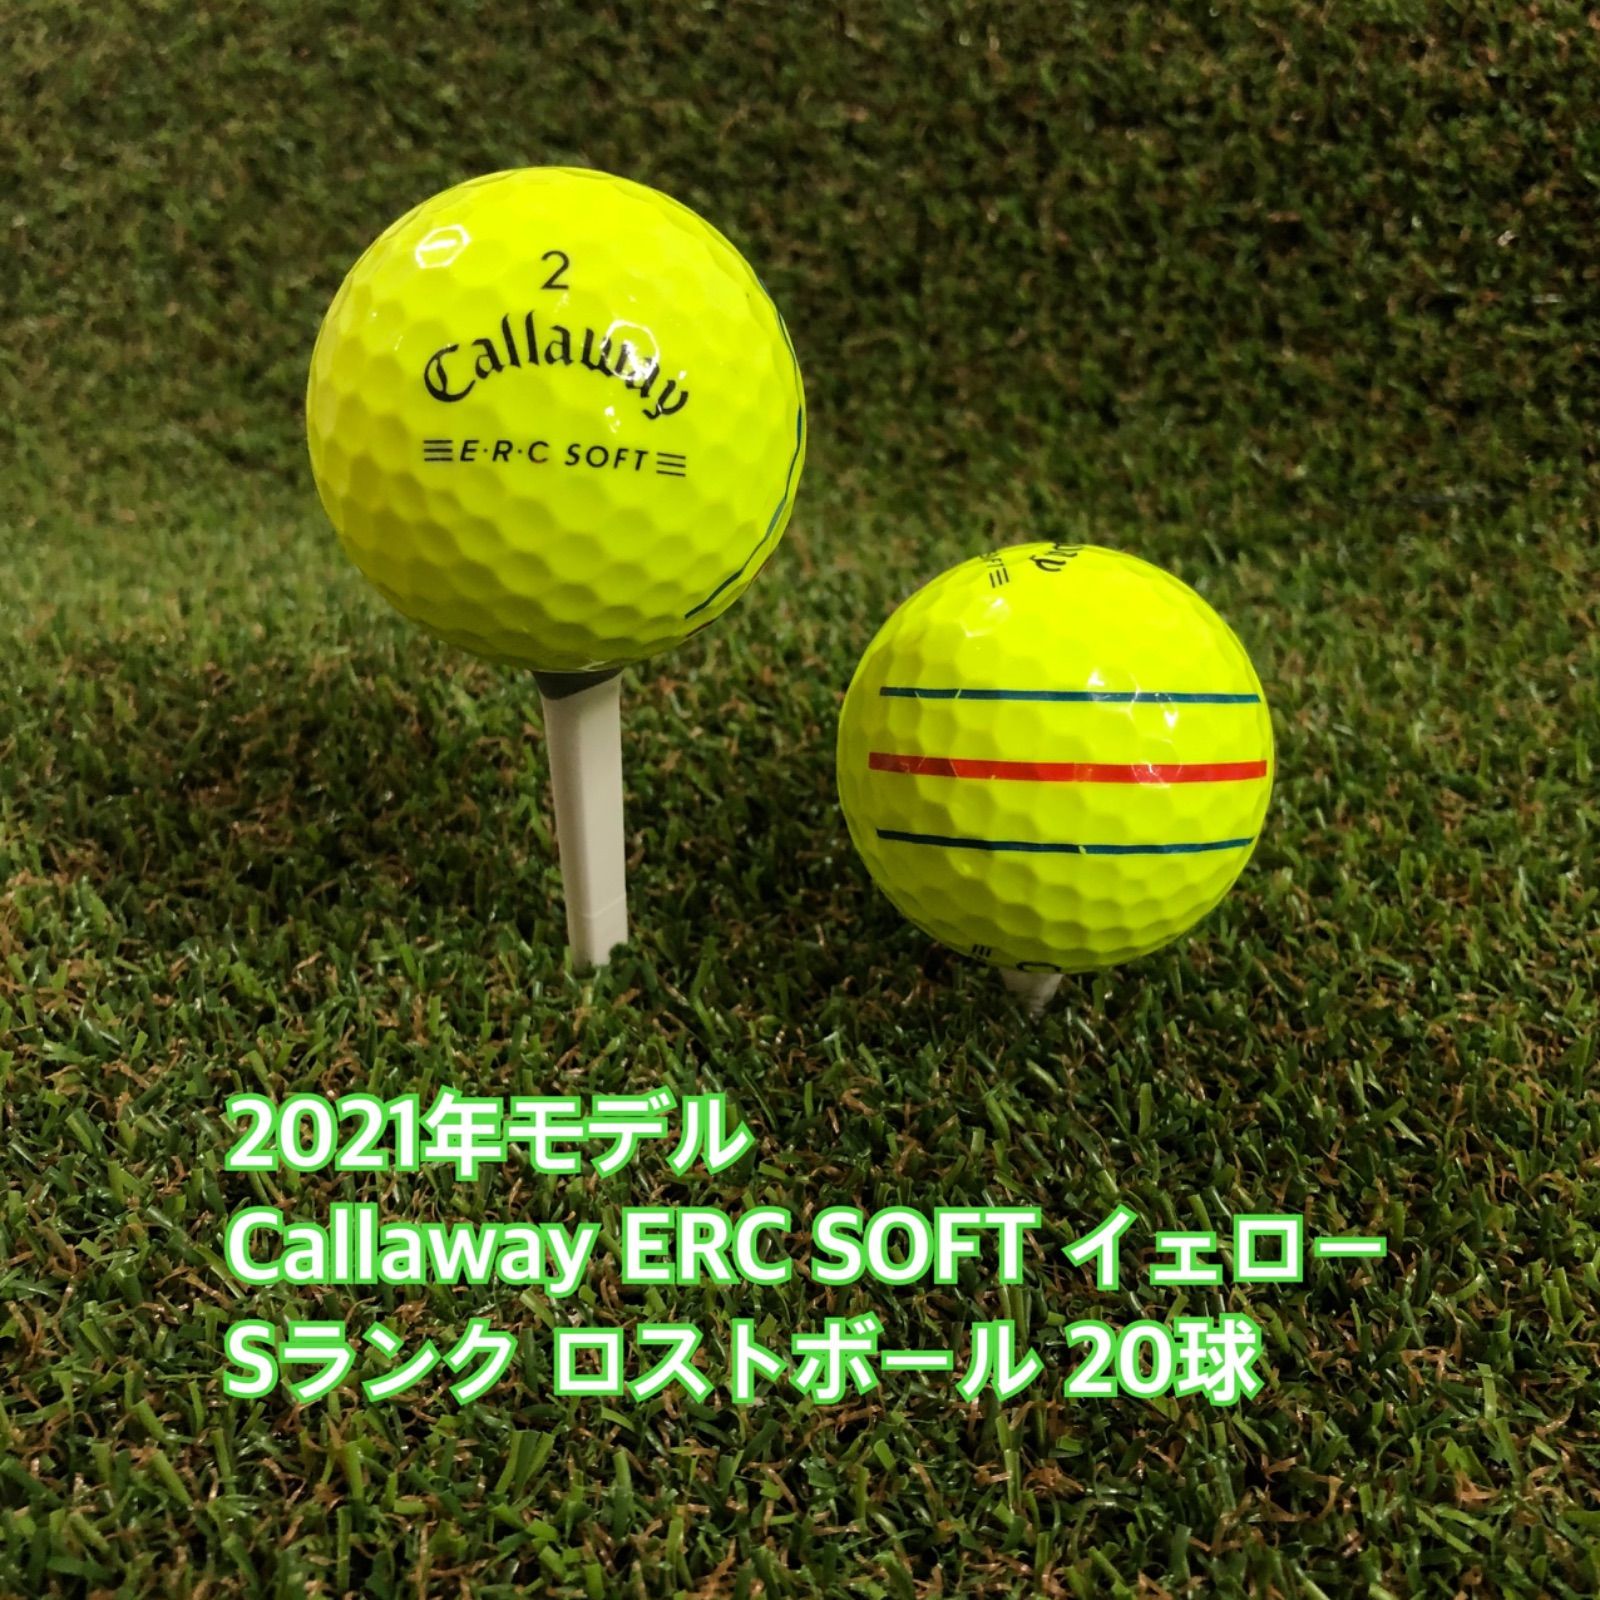 キャロウェイ (Callaway) ゴルフボール ERC SOFT - その他